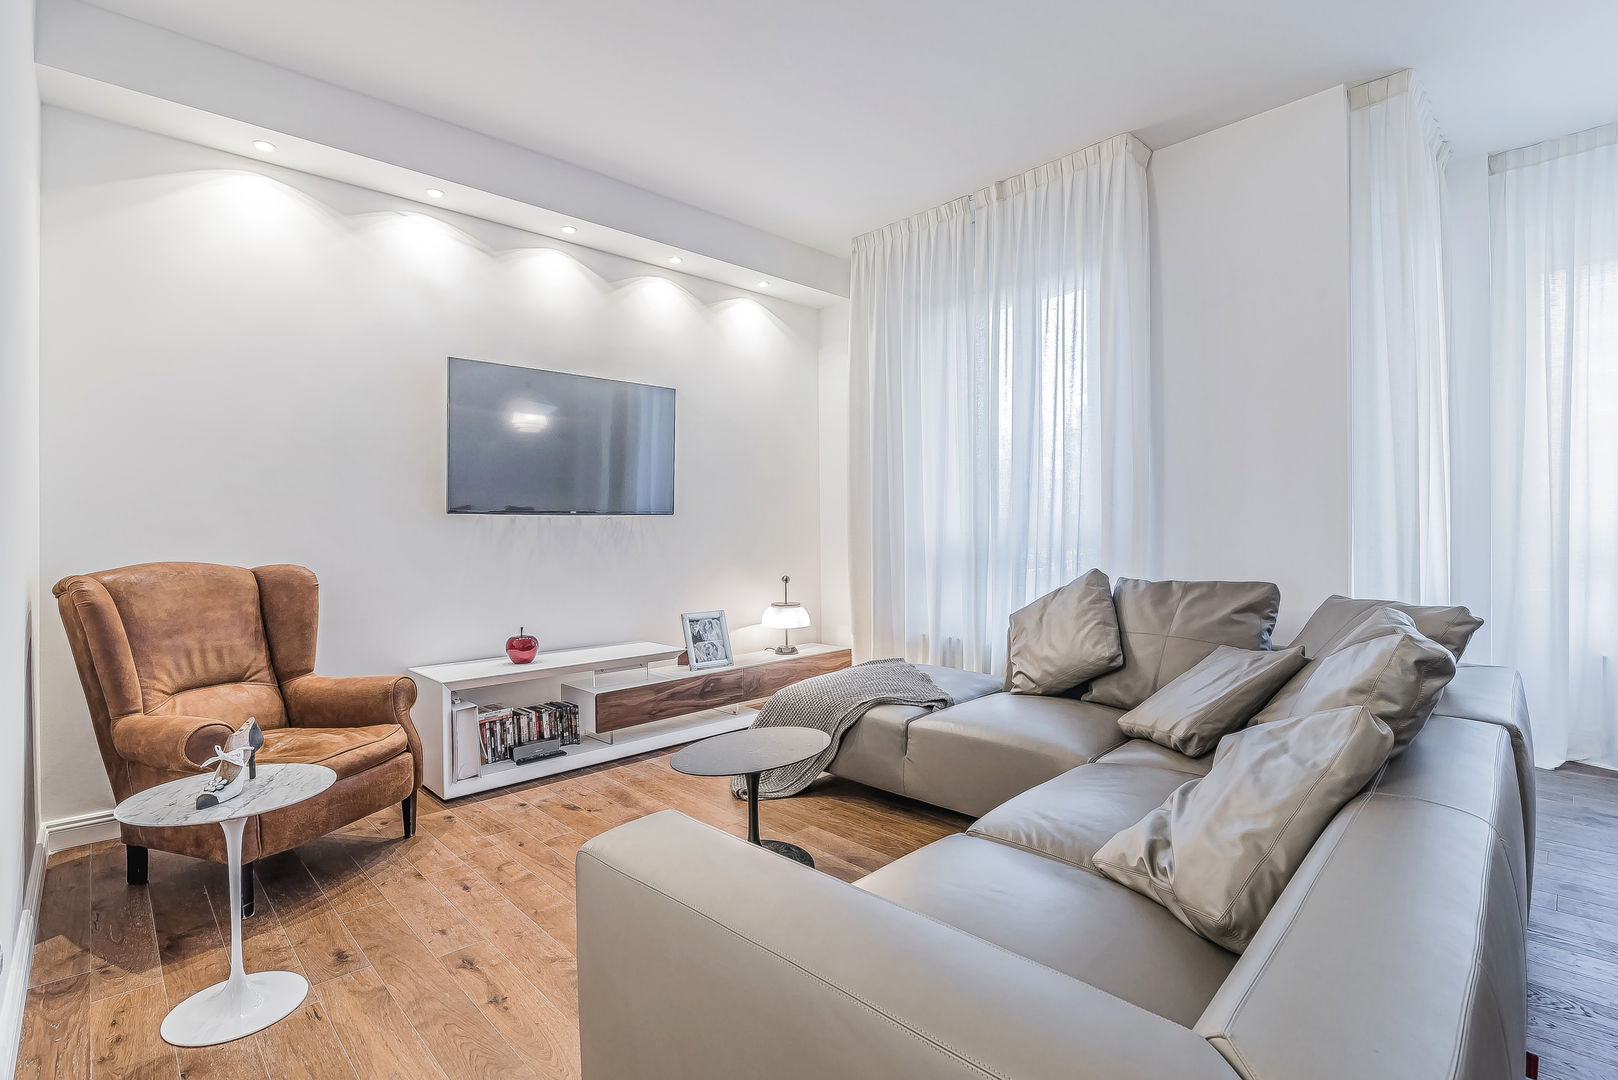 Ristrutturazione appartamento Milano, Tibaldi, Facile Ristrutturare Facile Ristrutturare Salas de estar modernas